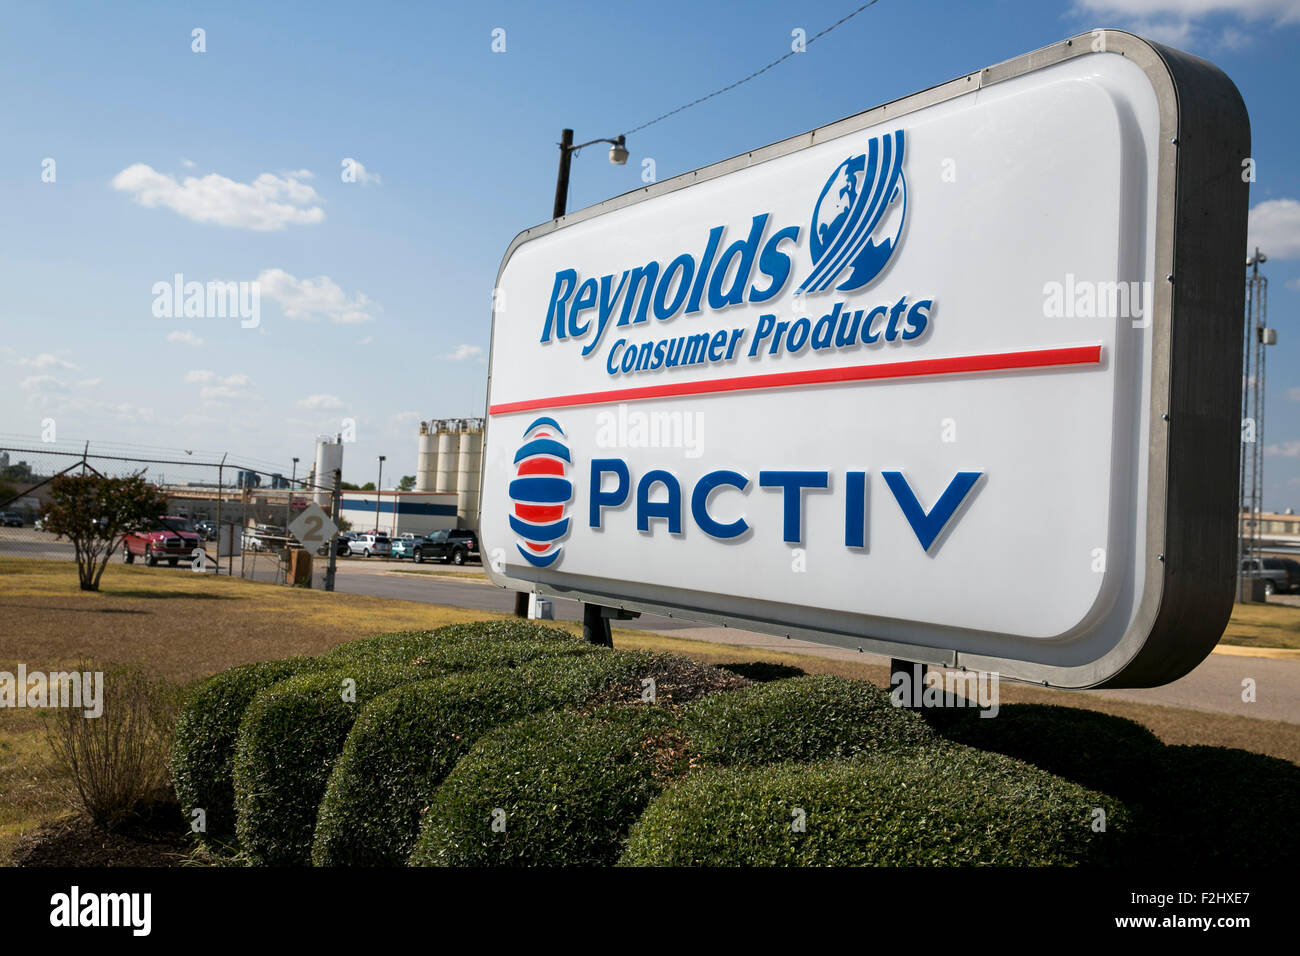 Un logotipo signo exterior de una fábrica operada por los productos de consumo de Reynolds y Pactiv en Temple, Texas el 8 de septiembre de 2015. Foto de stock